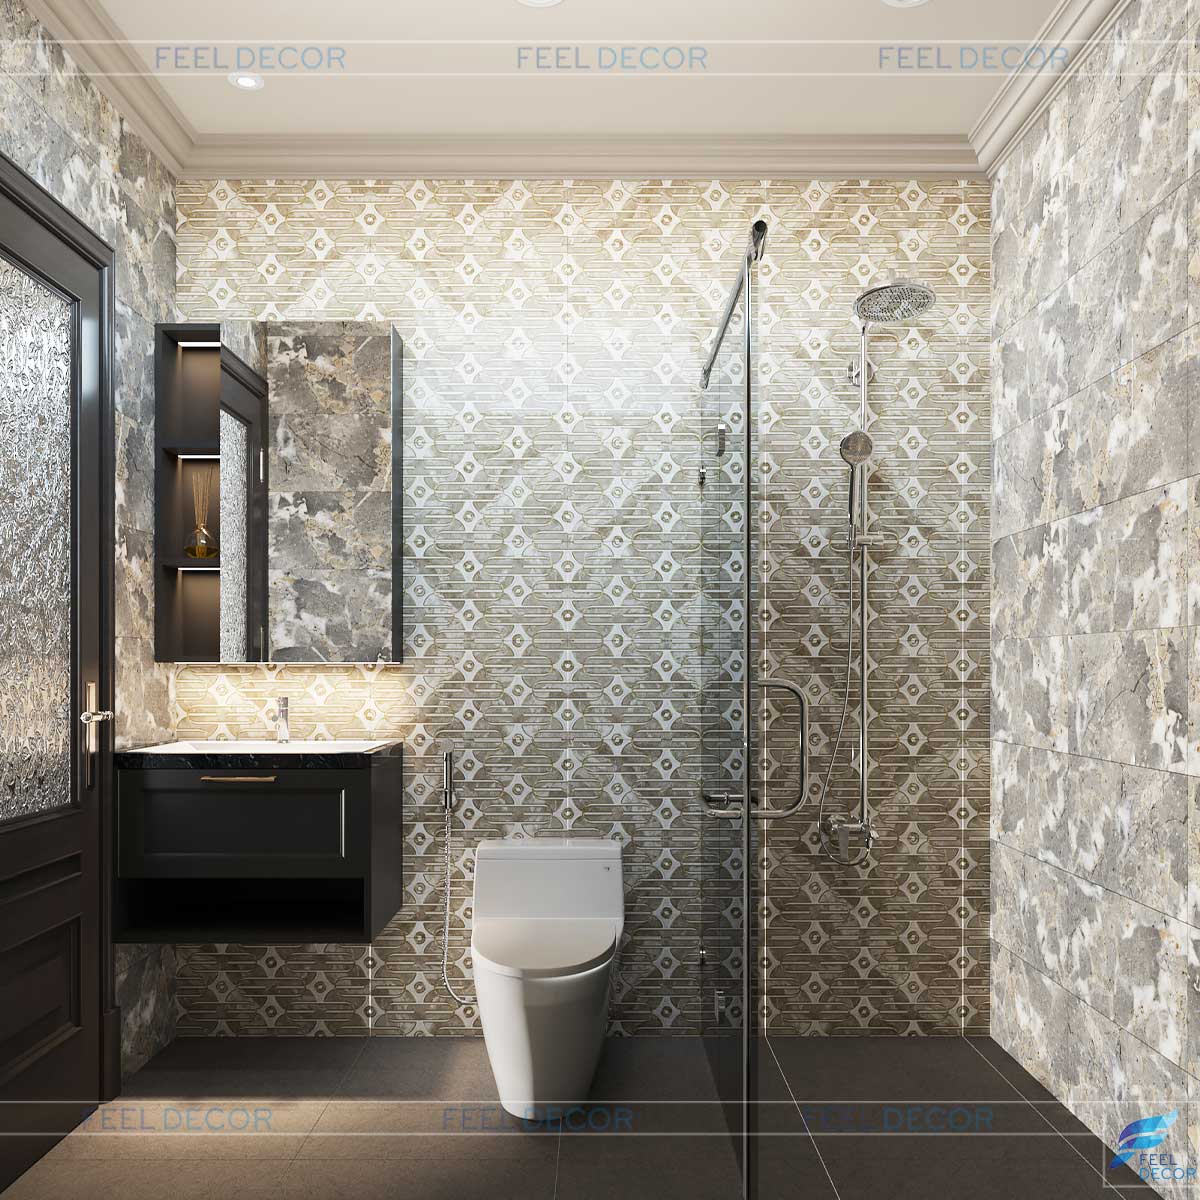 Phòng vệ sinh phong cách Tân cổ điển được thiết kế tinh tế khi ngăn cách phòng tắm và vệ sinh bằng tấm kính tao nhã